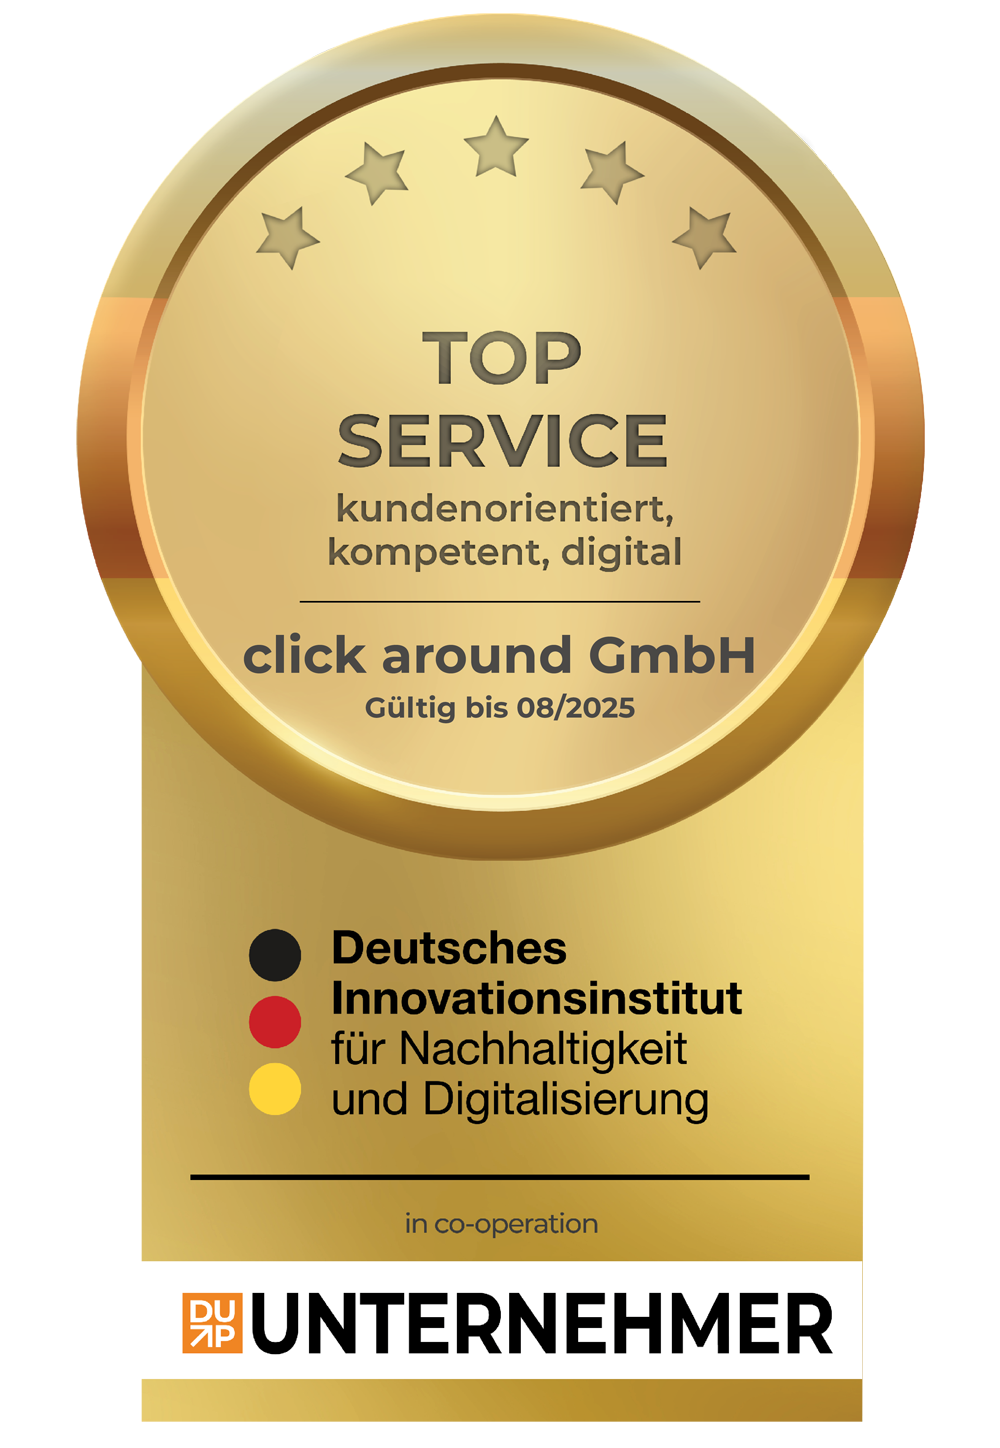 Top-Service Auszeichnung